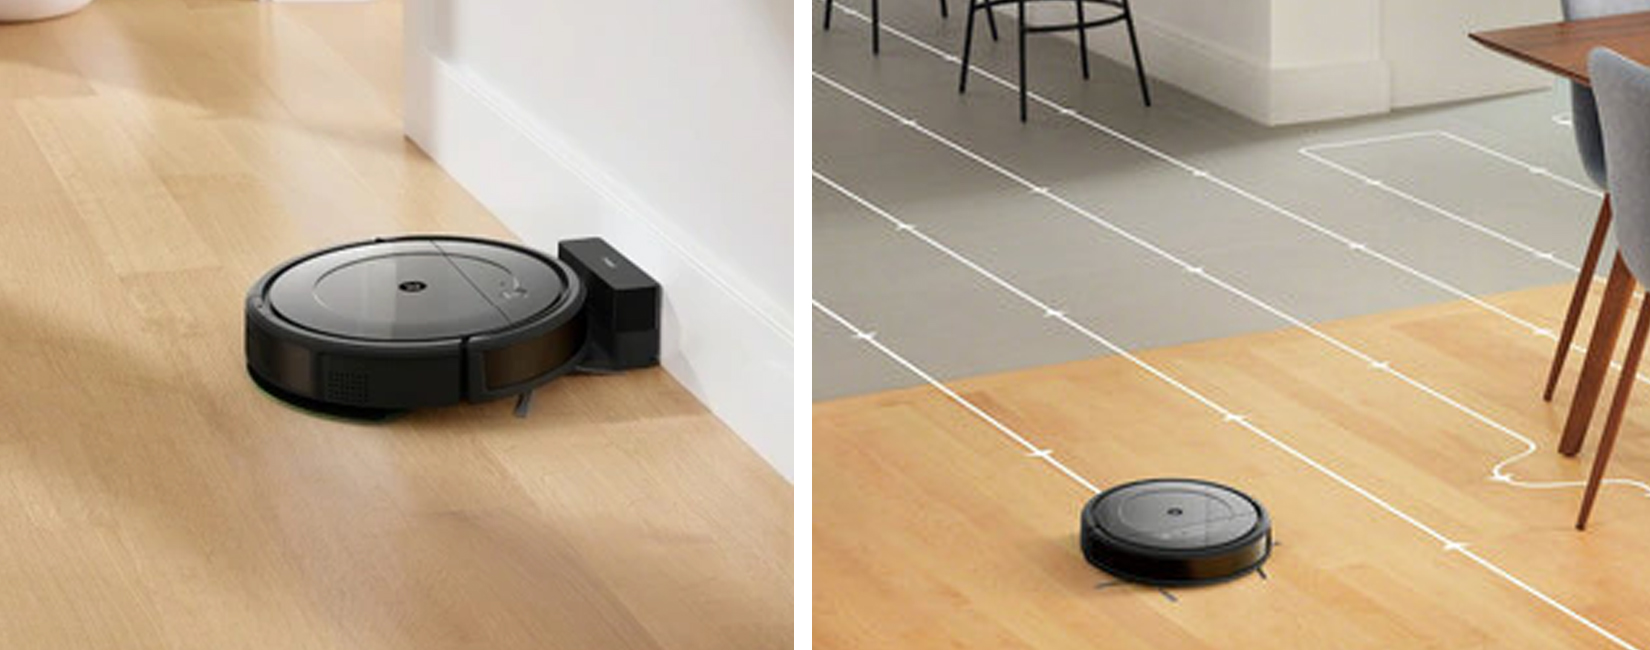 Как убирает робот пылесос для сухой и влажной уборки iRobot Roomba Combo